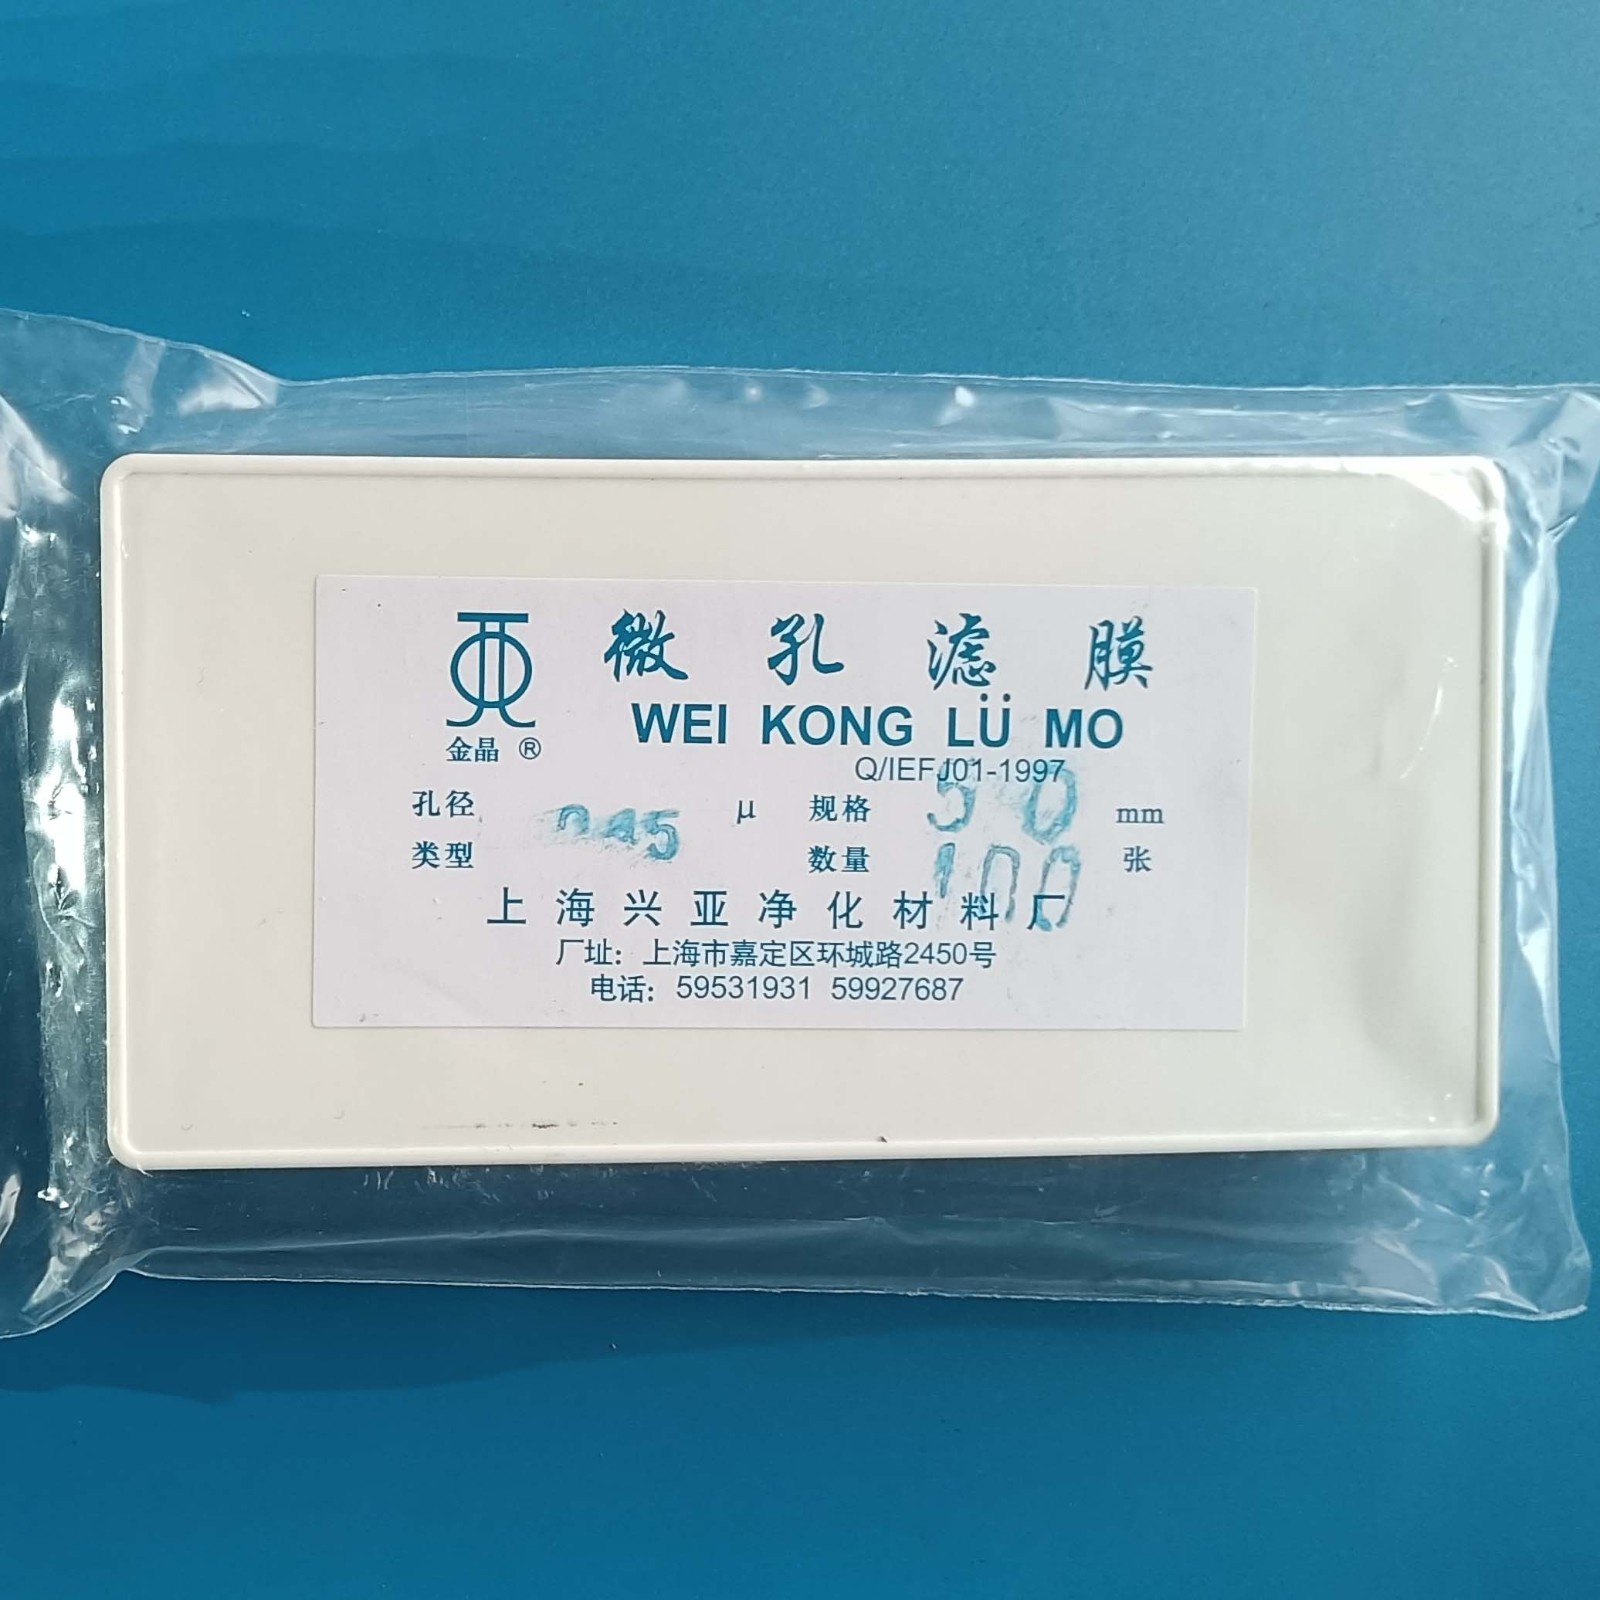 上海兴亚 上海兴亚 青岛库 混合纤维微孔滤膜 双盒 50/0.45 上海兴亚 50/0.45 50/0.45